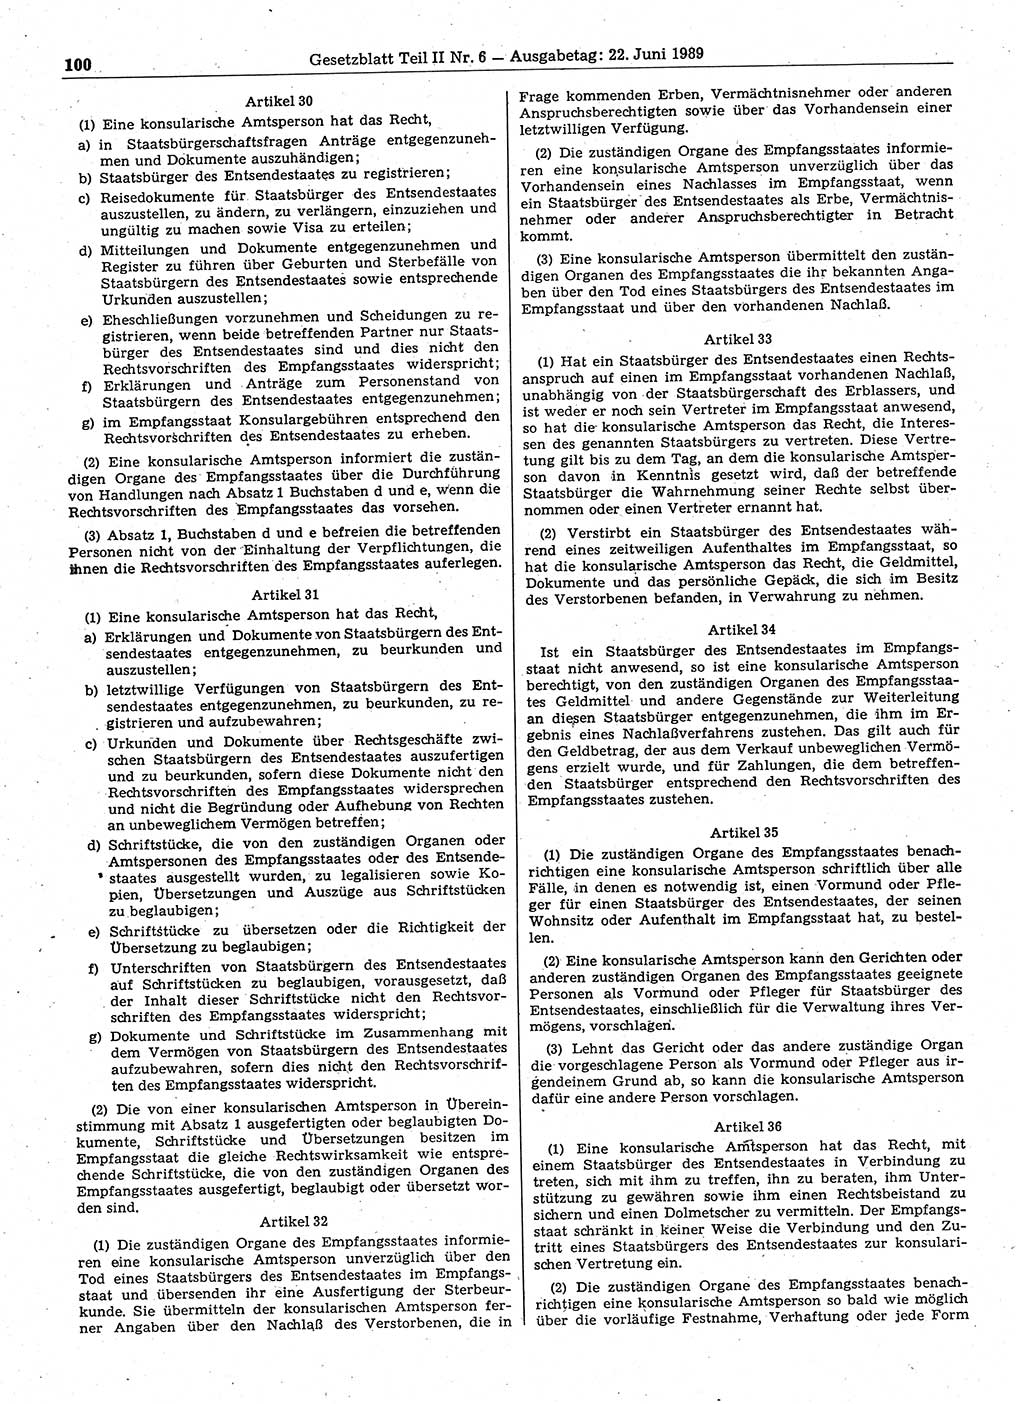 Gesetzblatt (GBl.) der Deutschen Demokratischen Republik (DDR) Teil ⅠⅠ 1989, Seite 100 (GBl. DDR ⅠⅠ 1989, S. 100)